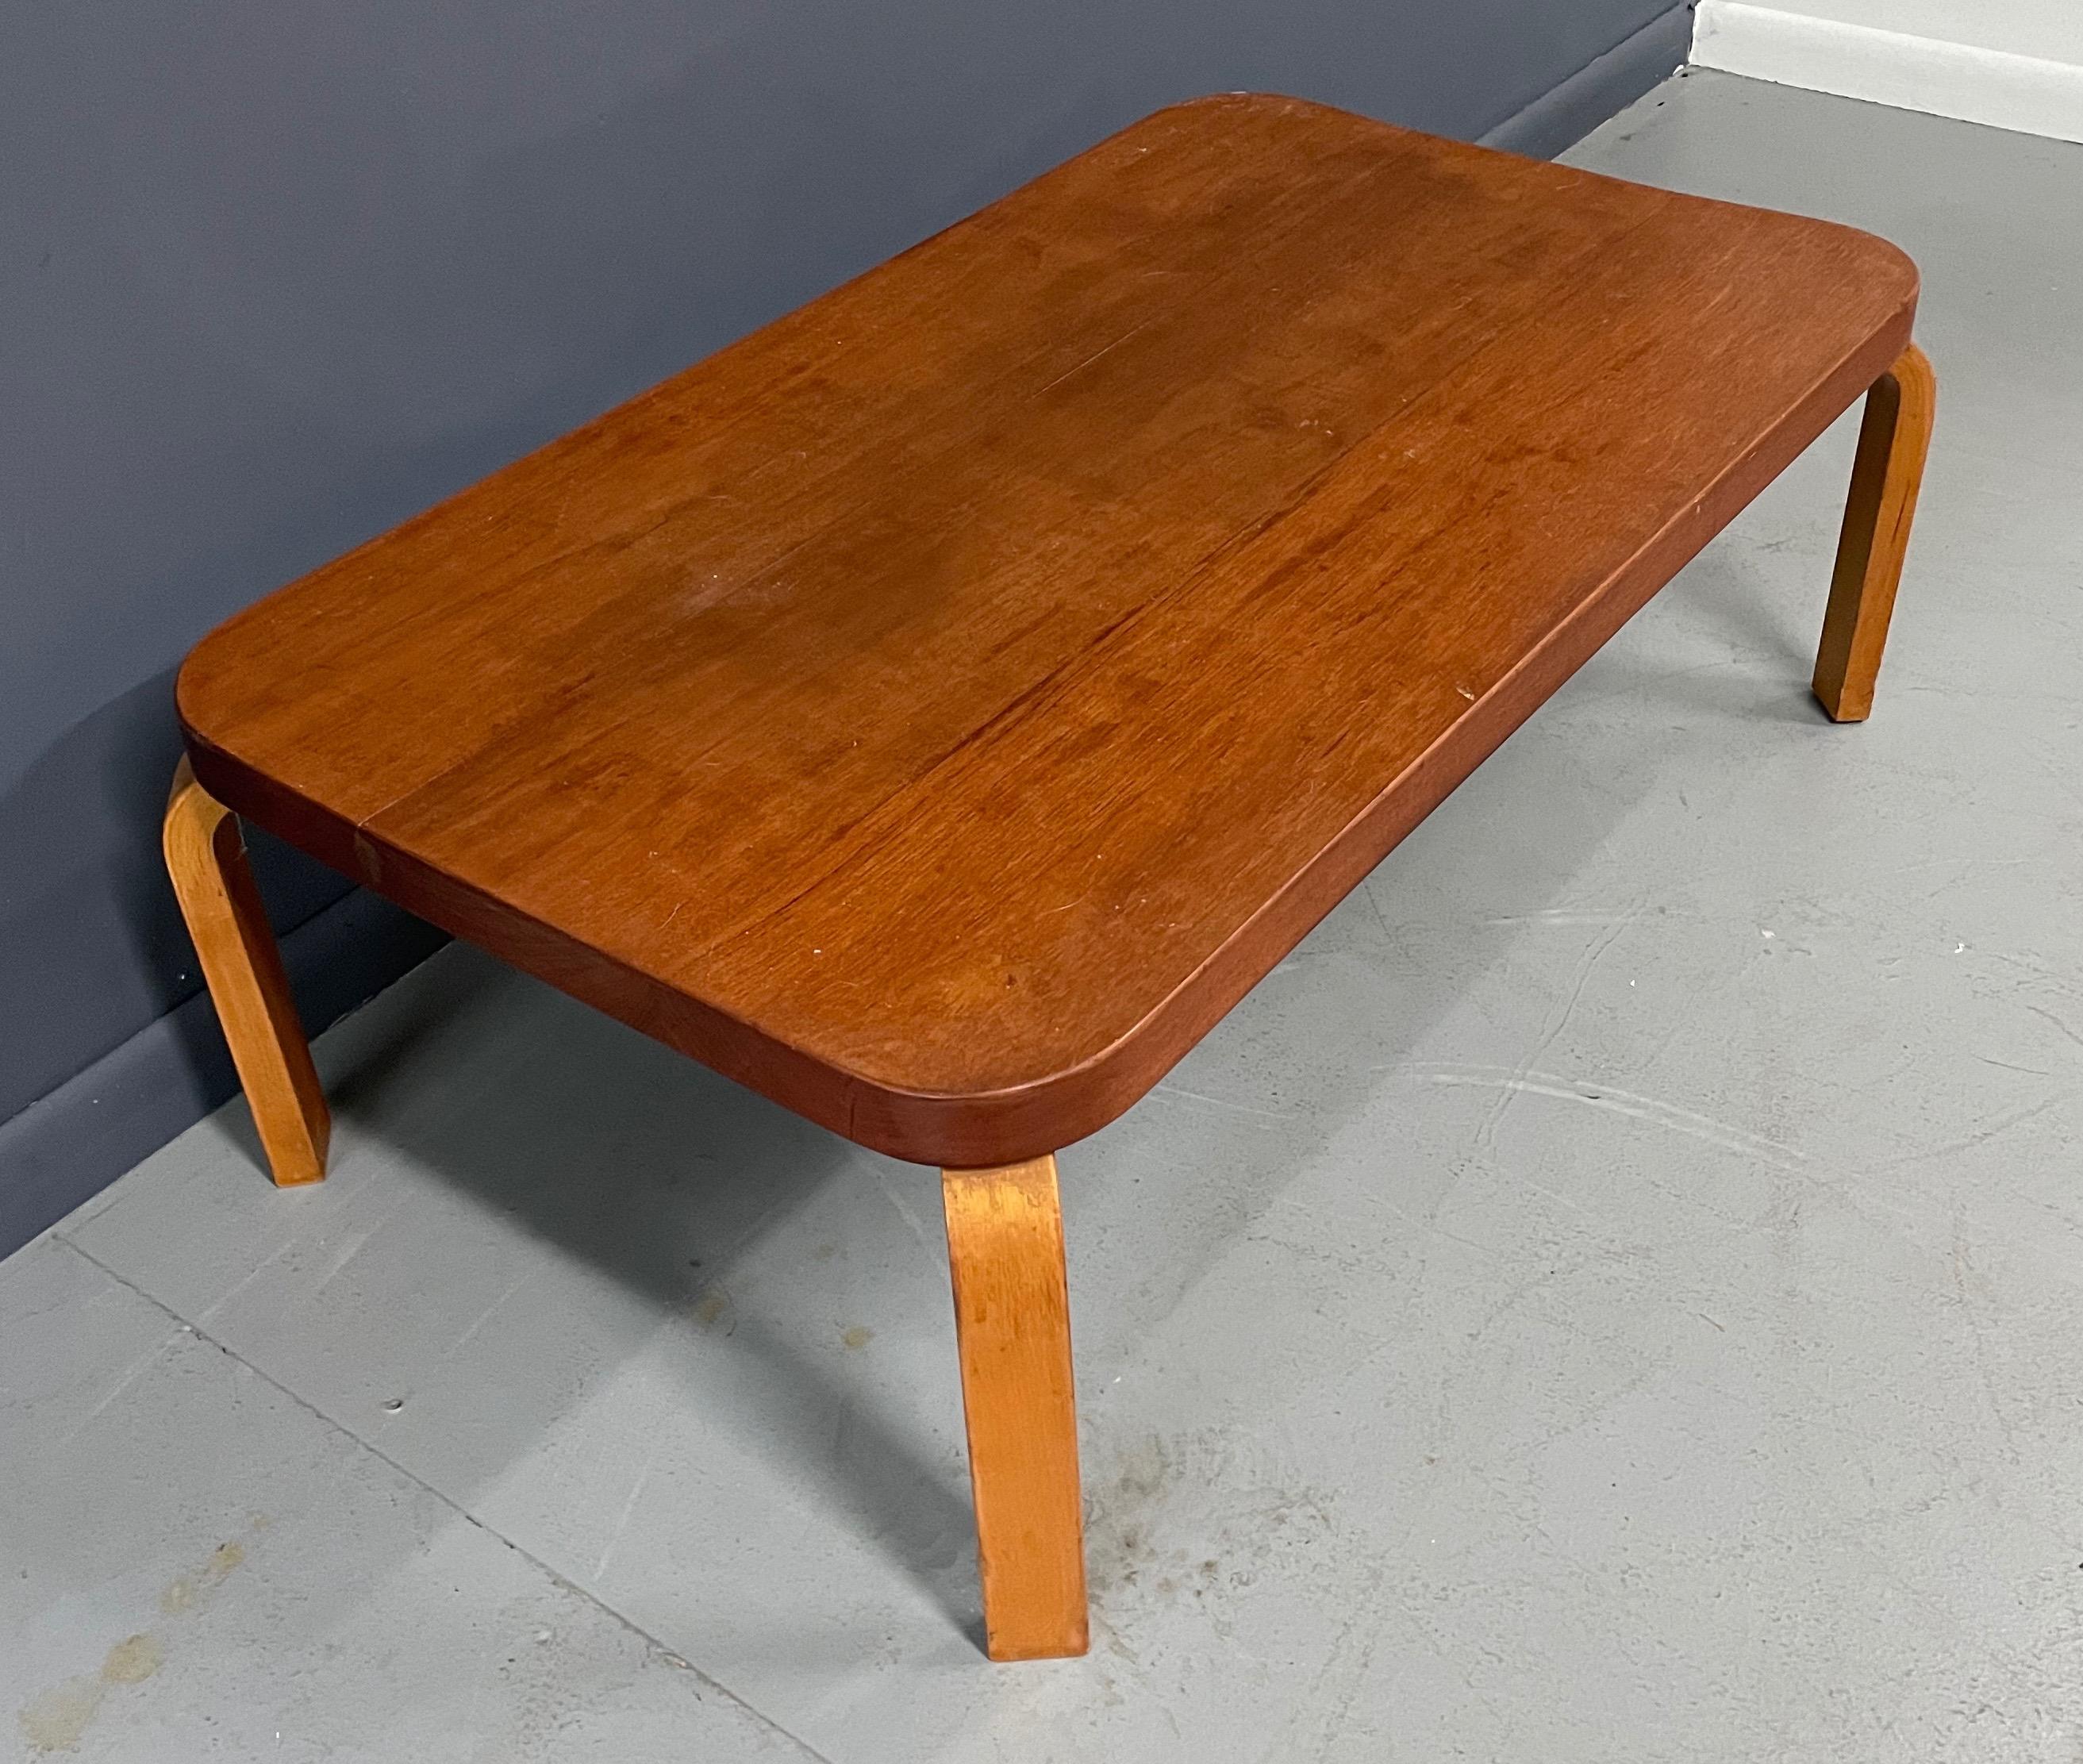 Ein wichtiger Entwurf von Alvar Aalto für Artek für den finnischen Pavillon auf der Weltausstellung 1939. Der Tisch hat noch den originalen Zollaufkleber. Dieser Tisch ist ein Überbleibsel und befindet sich im Originalzustand.